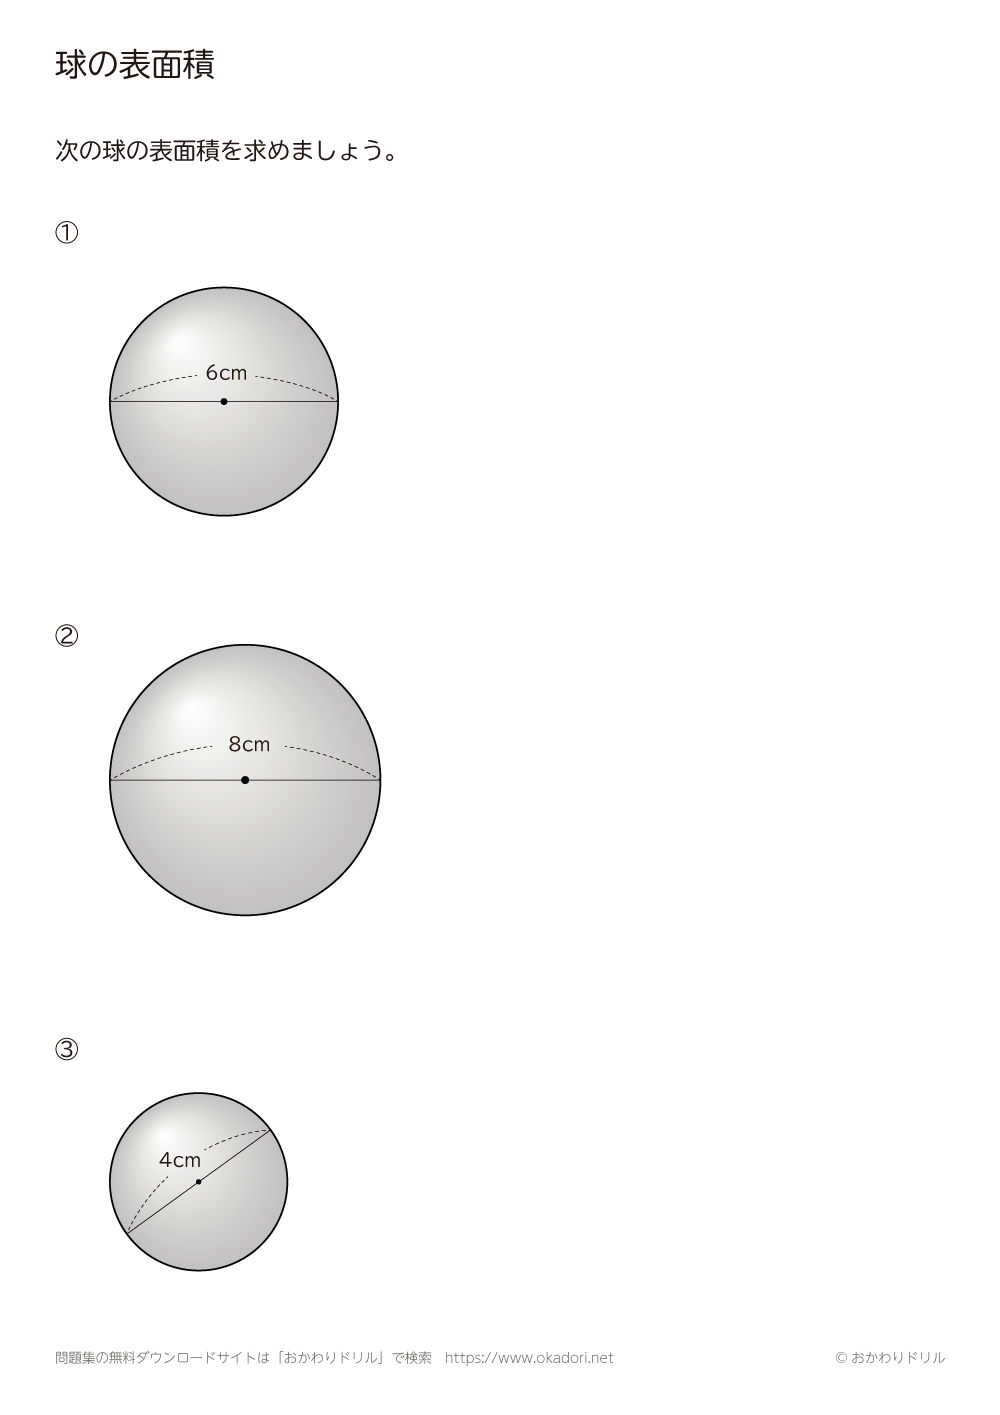 球の表面積2